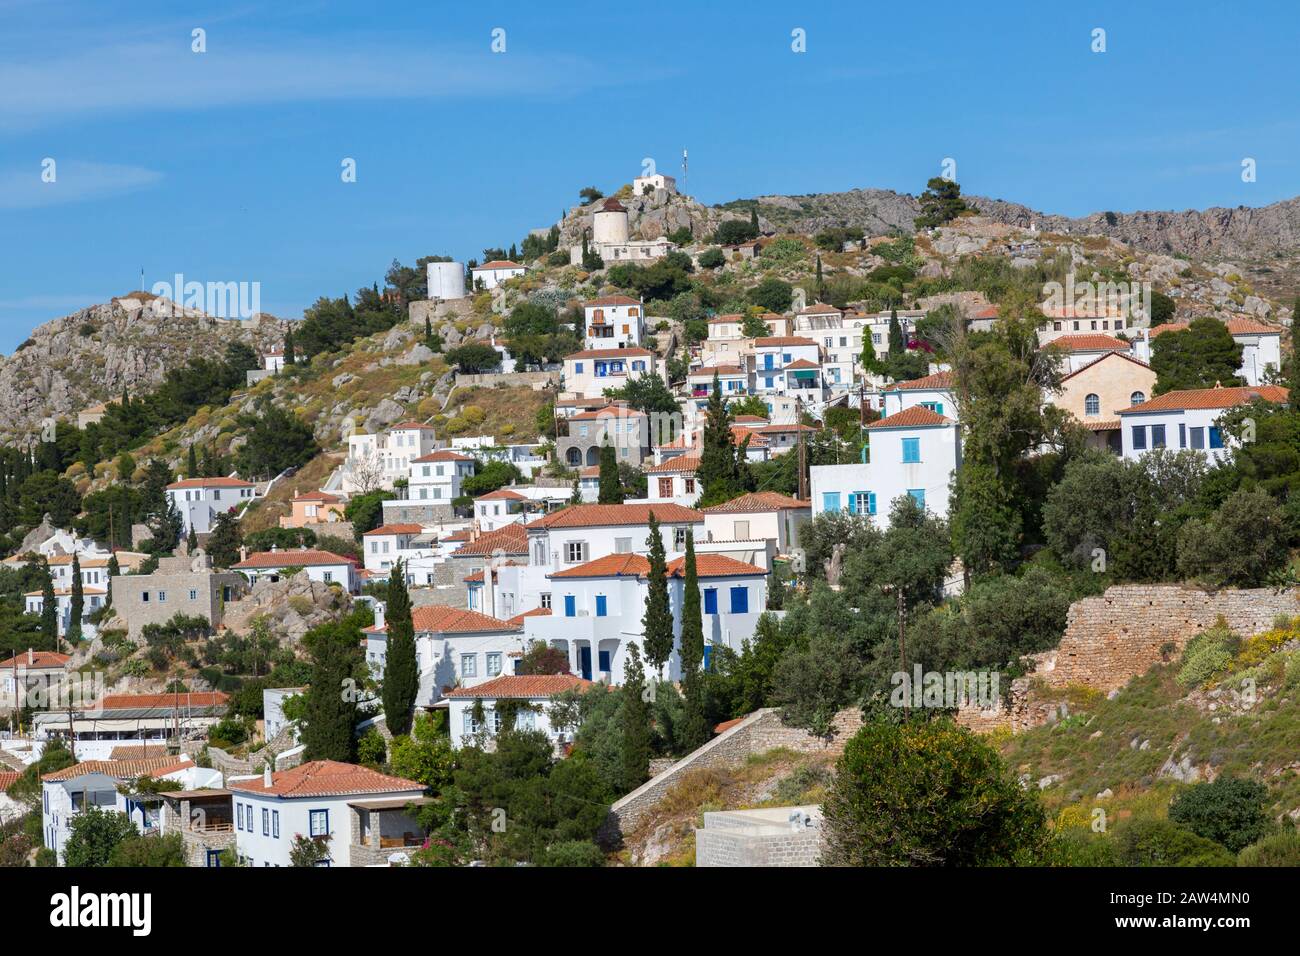 Casa imbiancata seduta sulla cima dello scafo sull'isola greca di Hydra. Hydra fa parte delle Isole Saroniche. Foto Stock